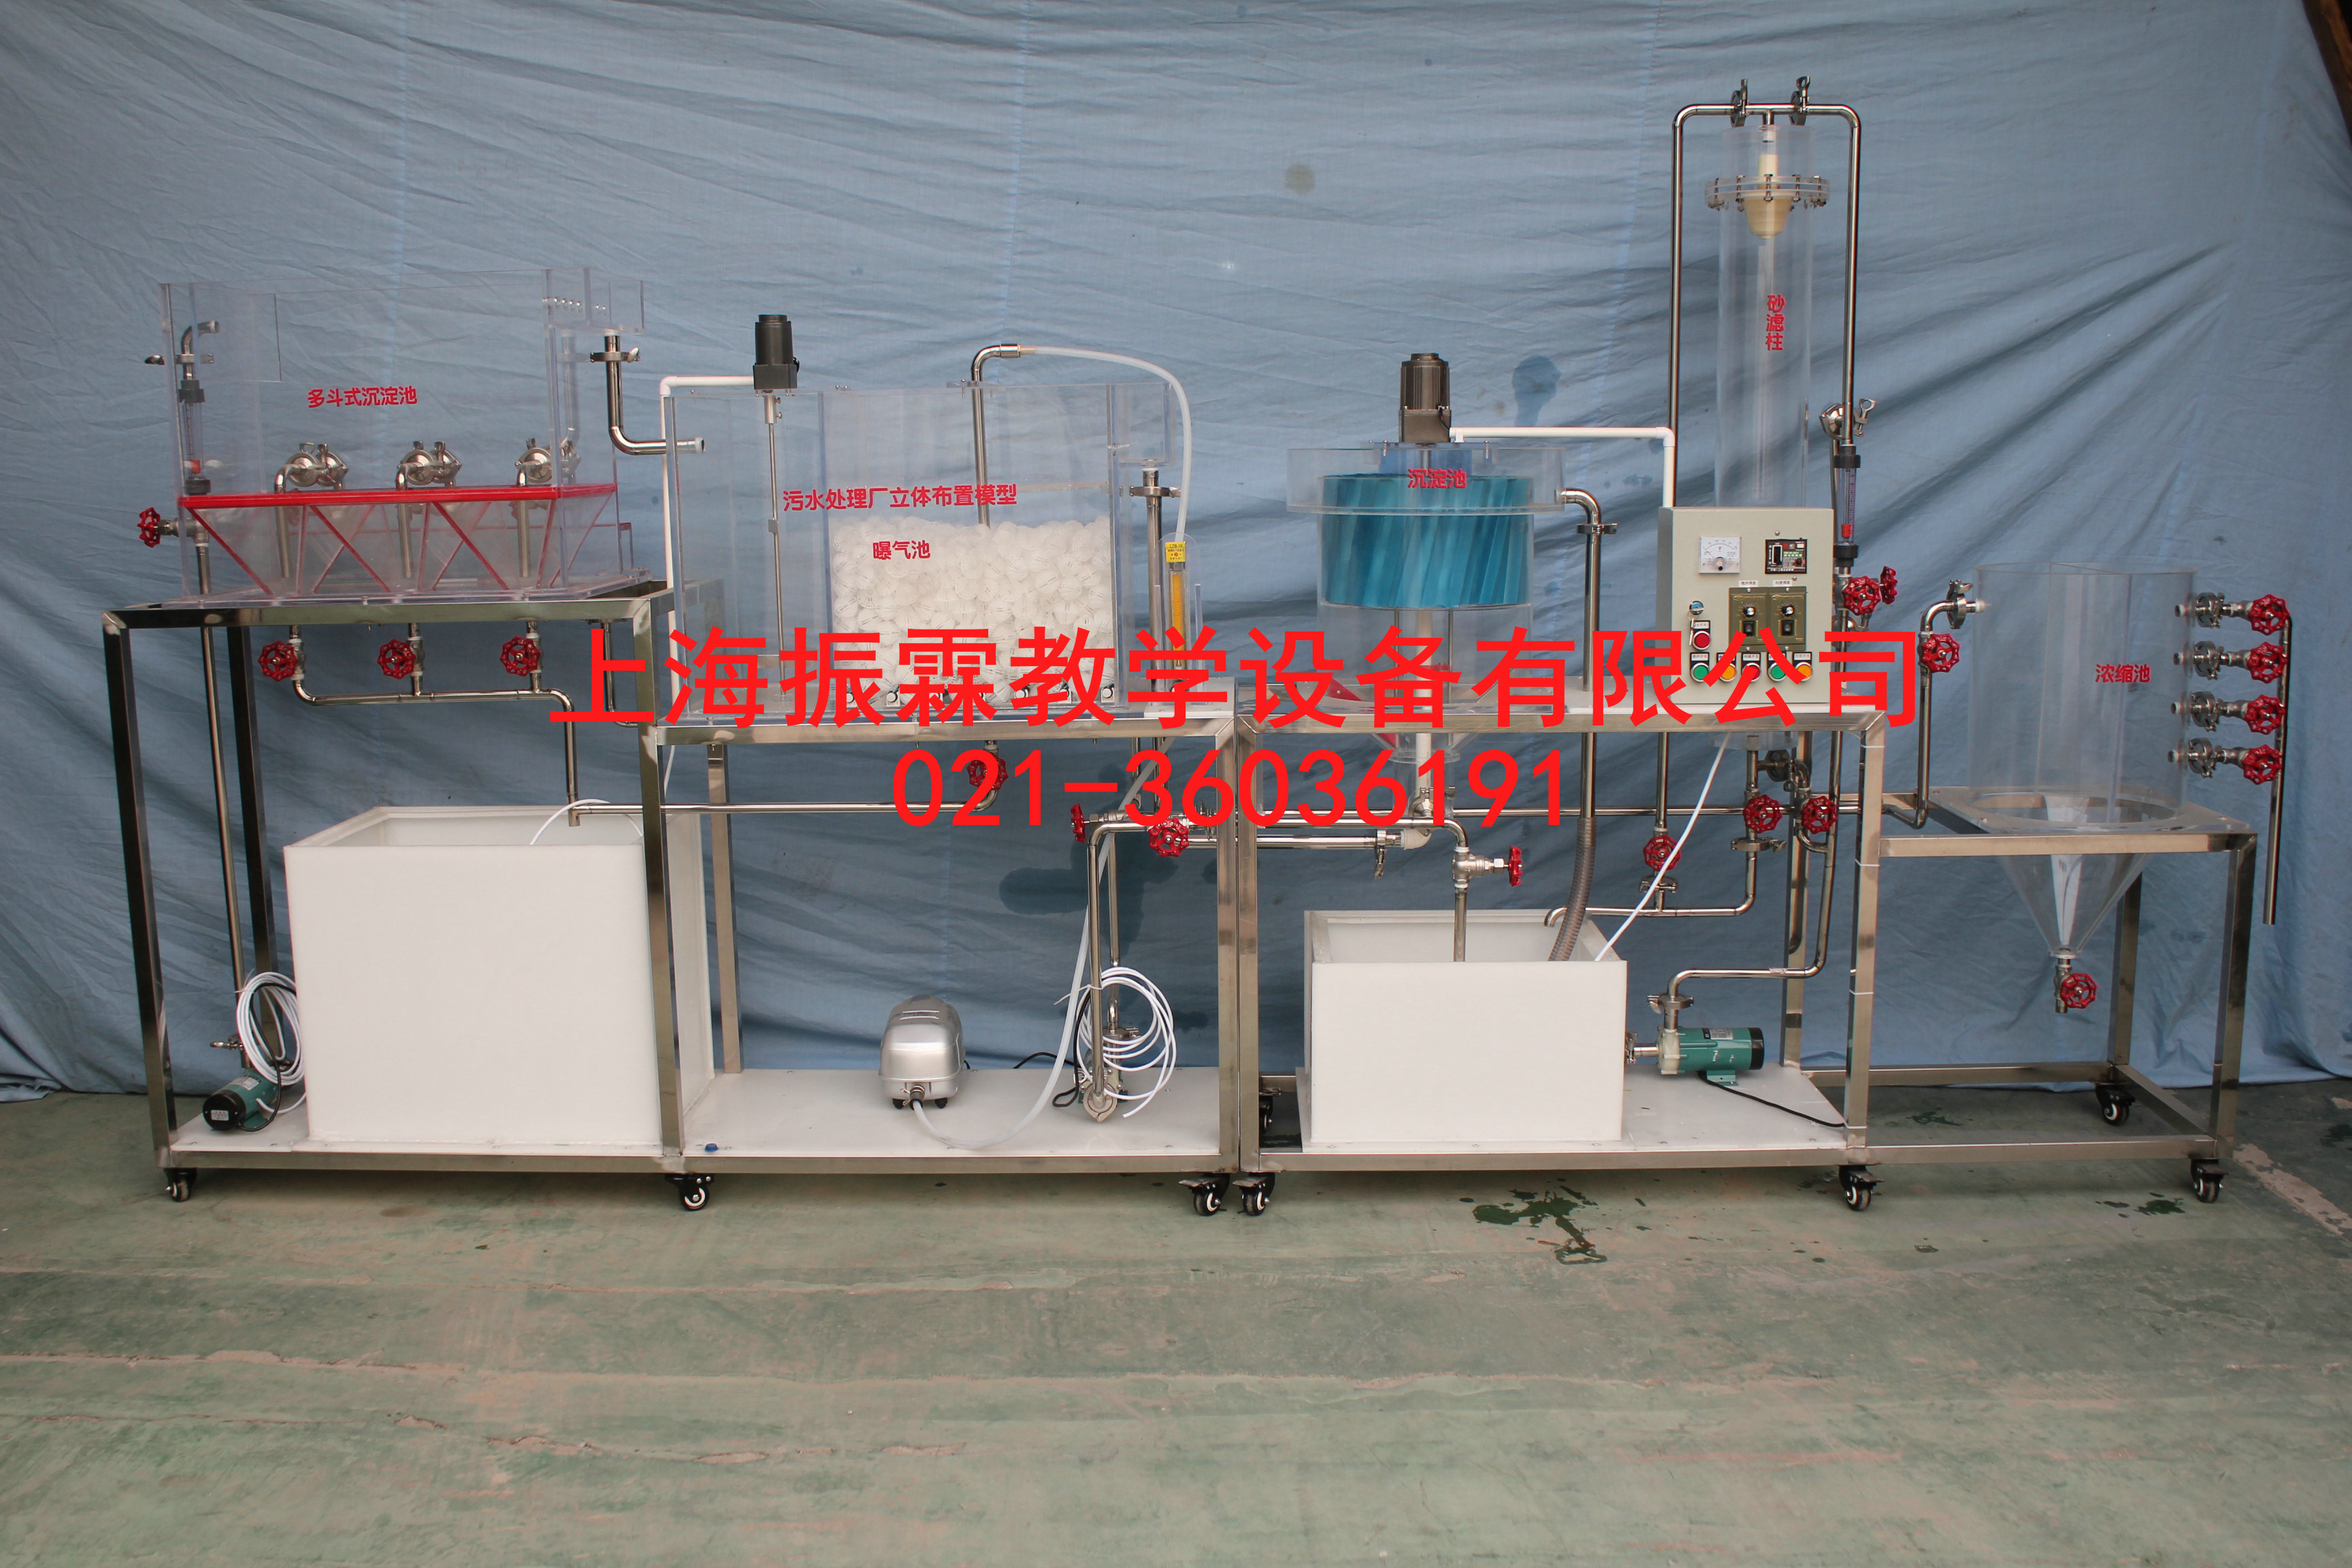 污水处理厂立体布置模型装置,污水处理厂立体布置模型--上海振霖公司